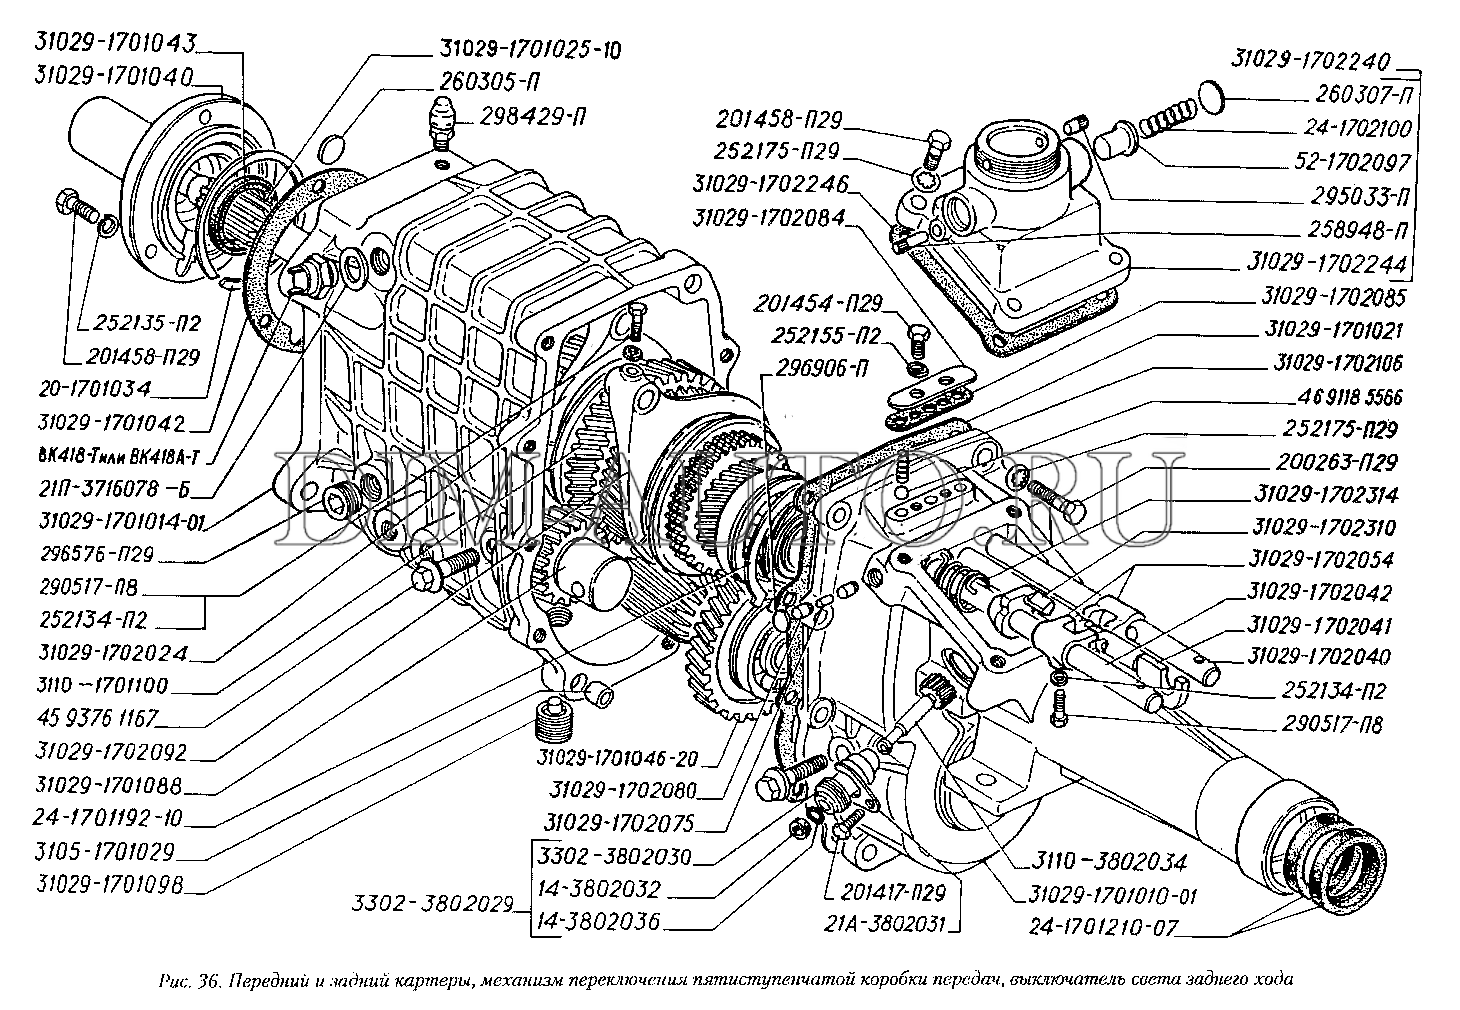 Коробка газель 406 двигатель